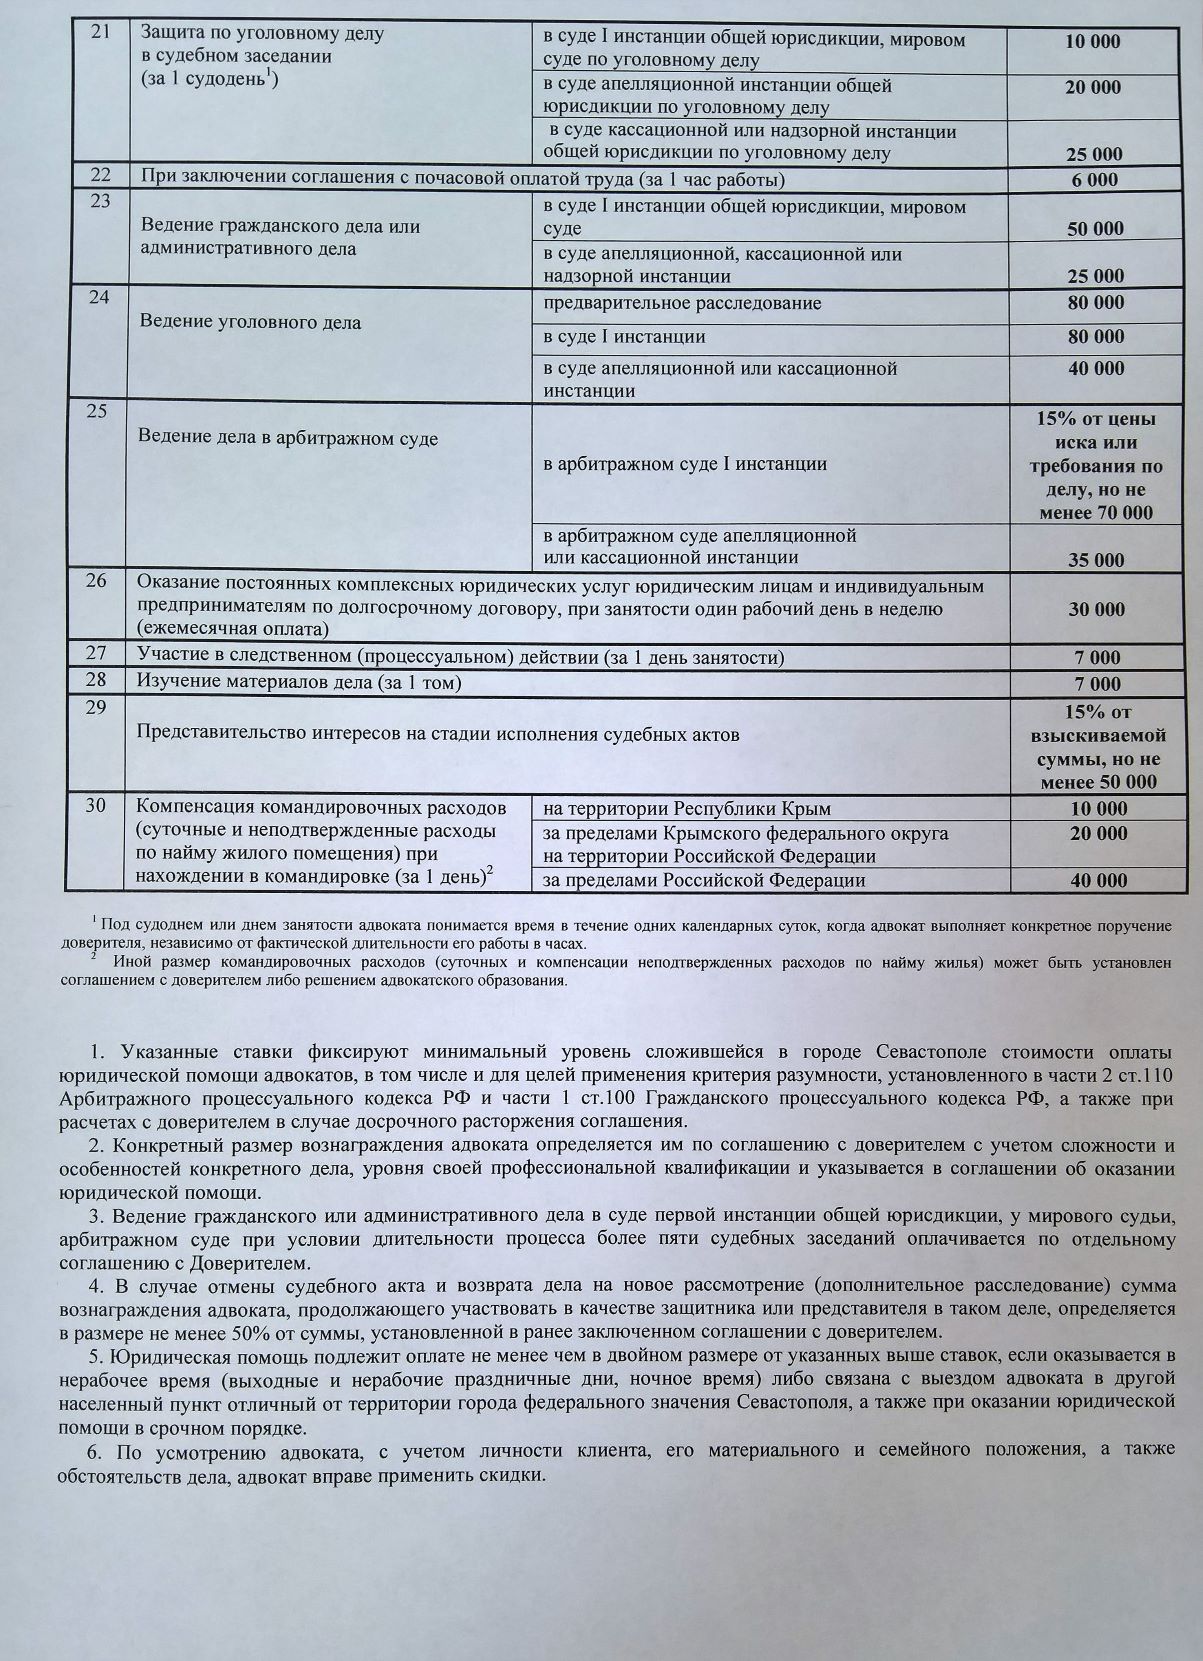 Утверждены минимальные ставки вознаграждений для адвокатов Севастополя, действуют с 15 августа 2020 года